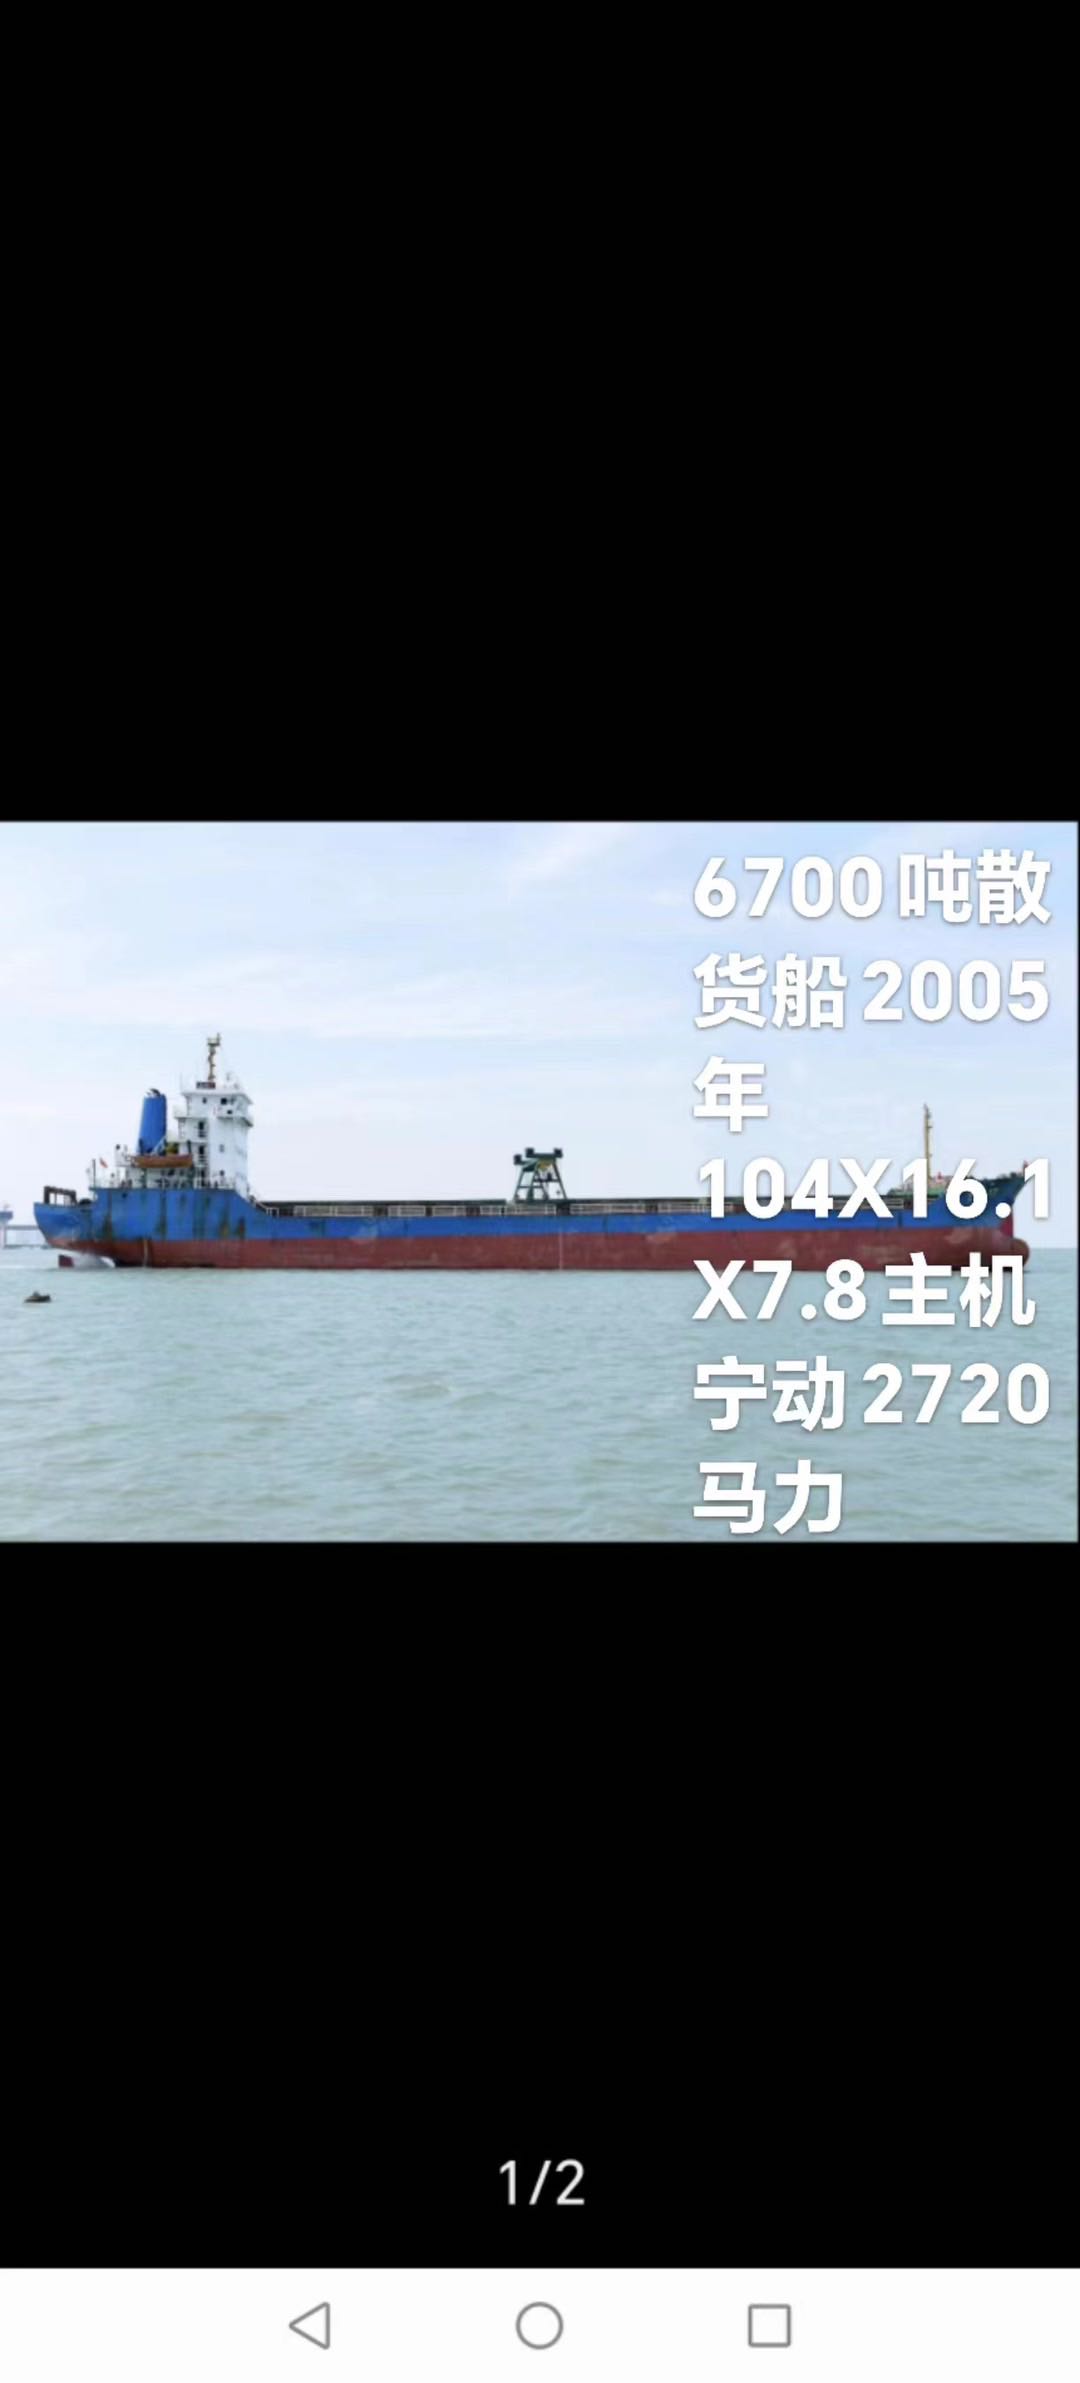 低价抛售6700吨多用途船